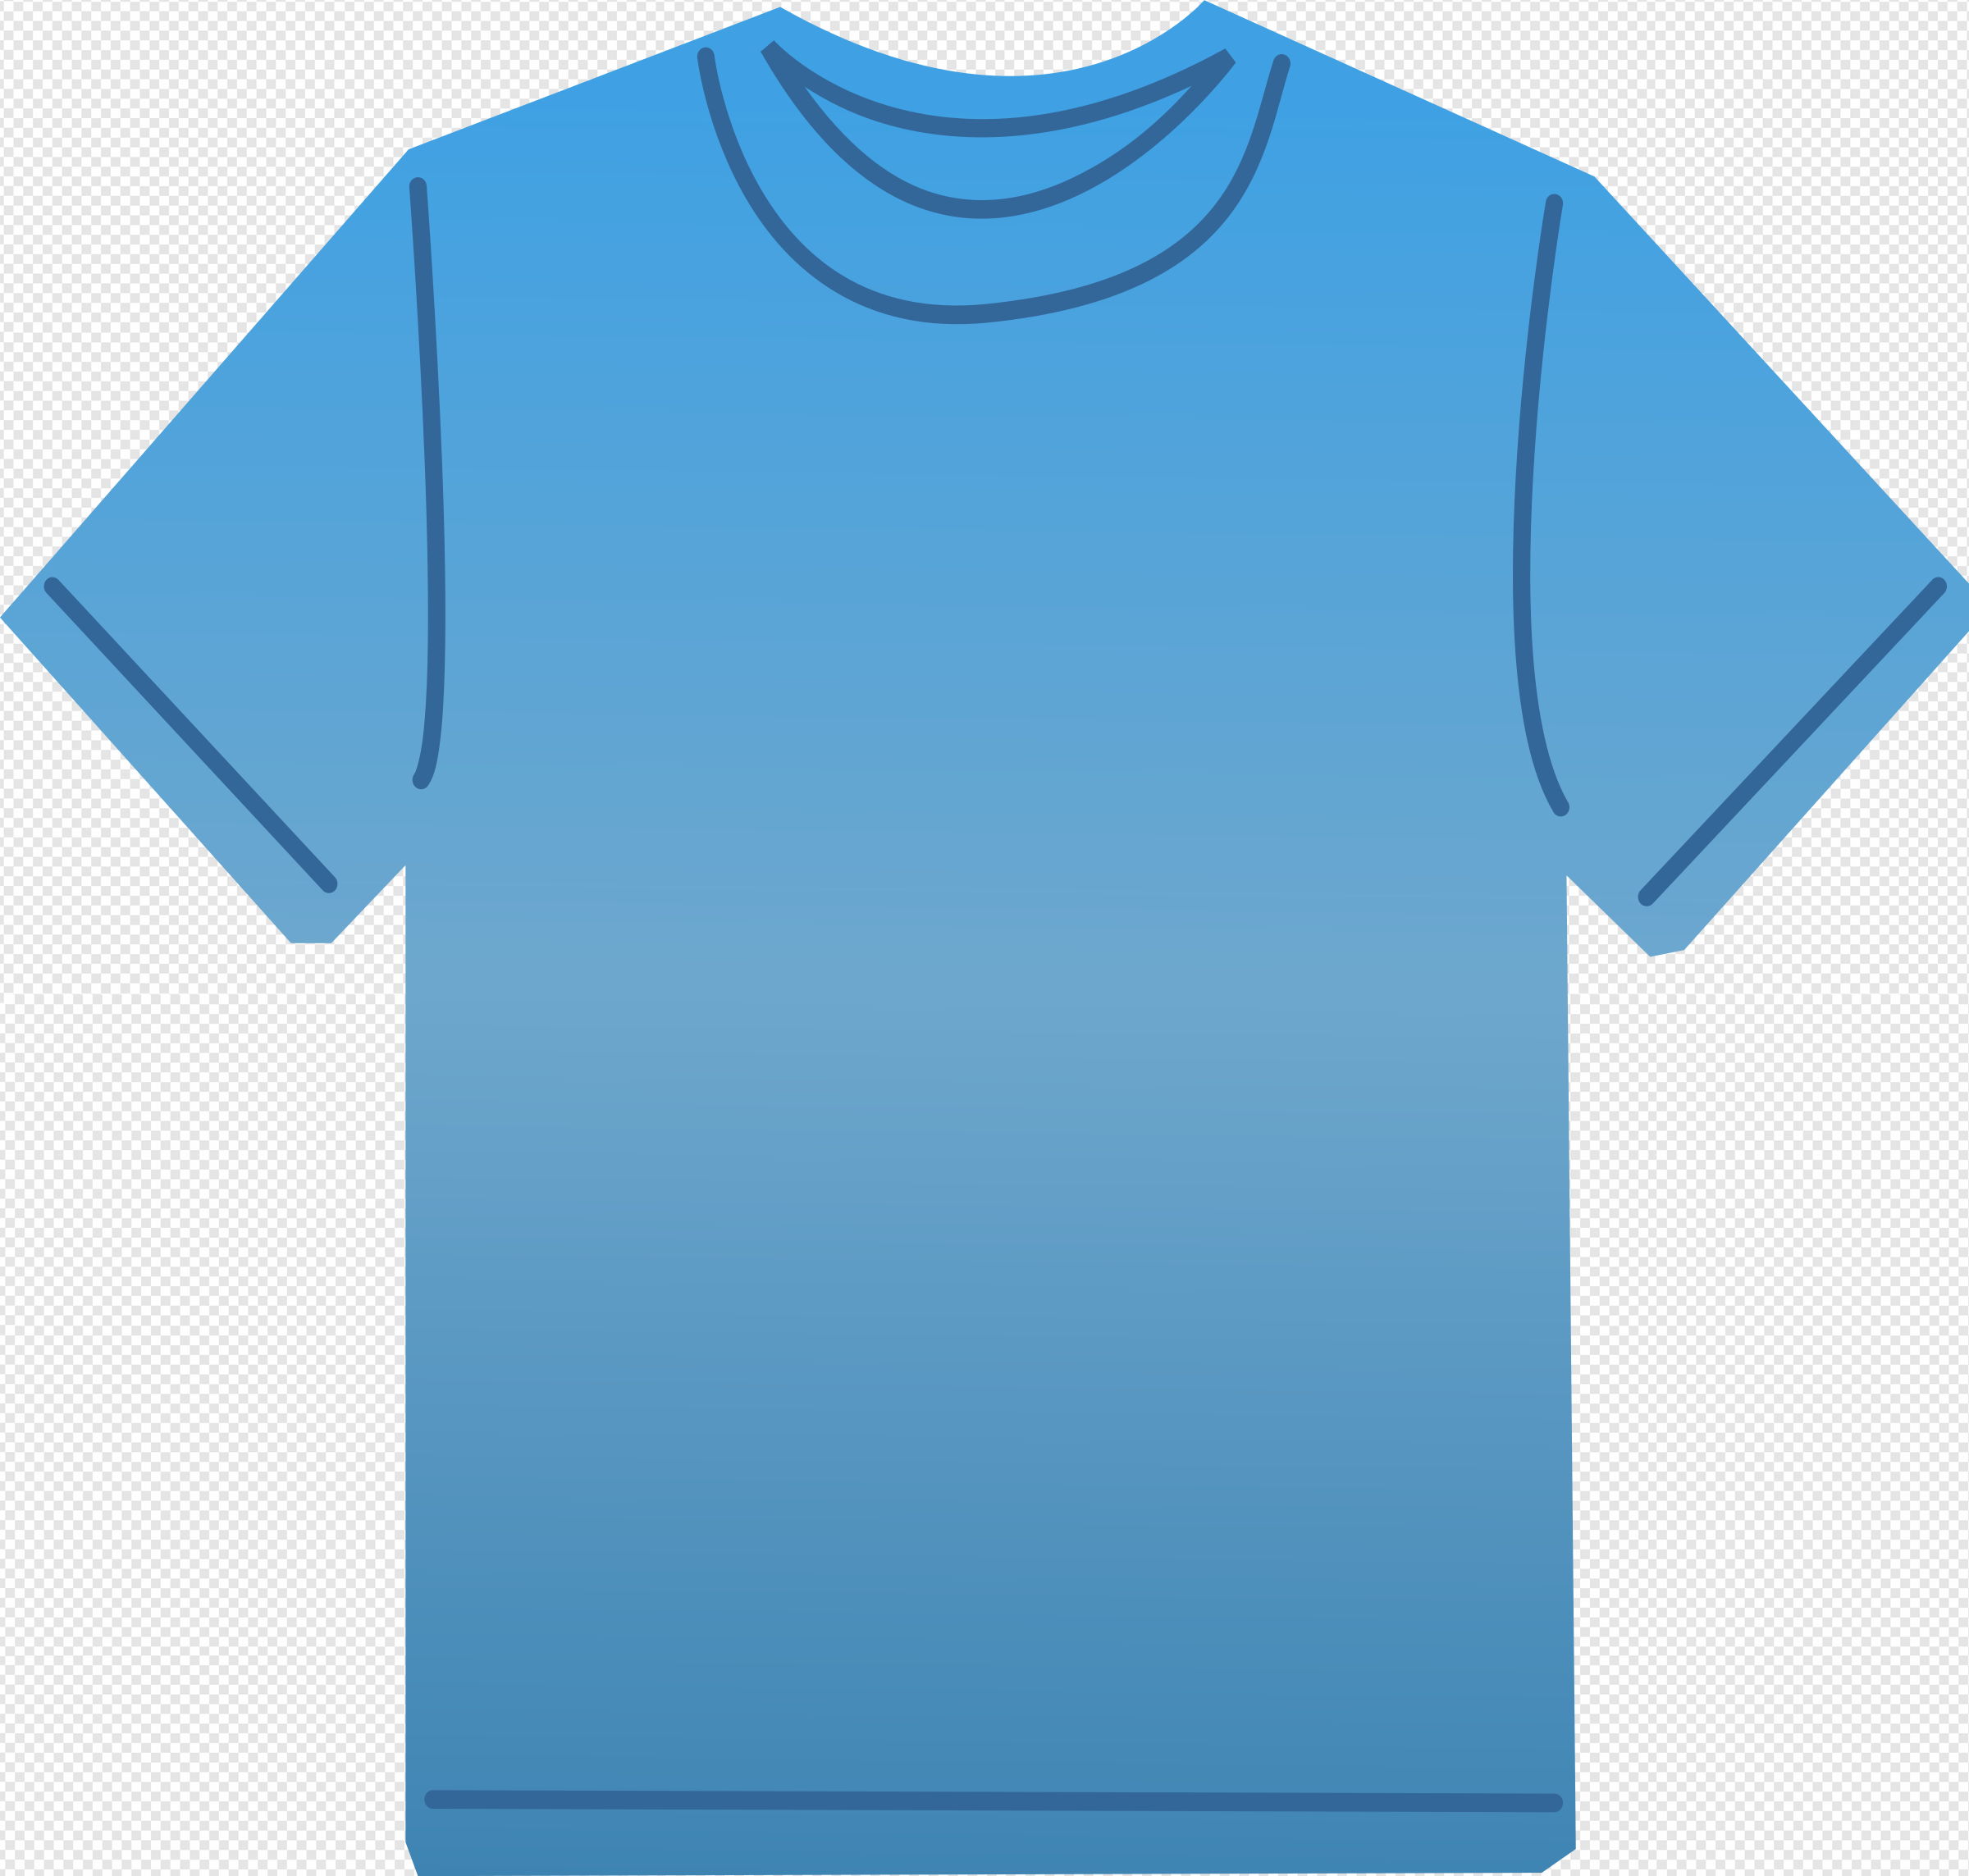 Blue Shirt PNG Transparent Images Download - PNG Packs